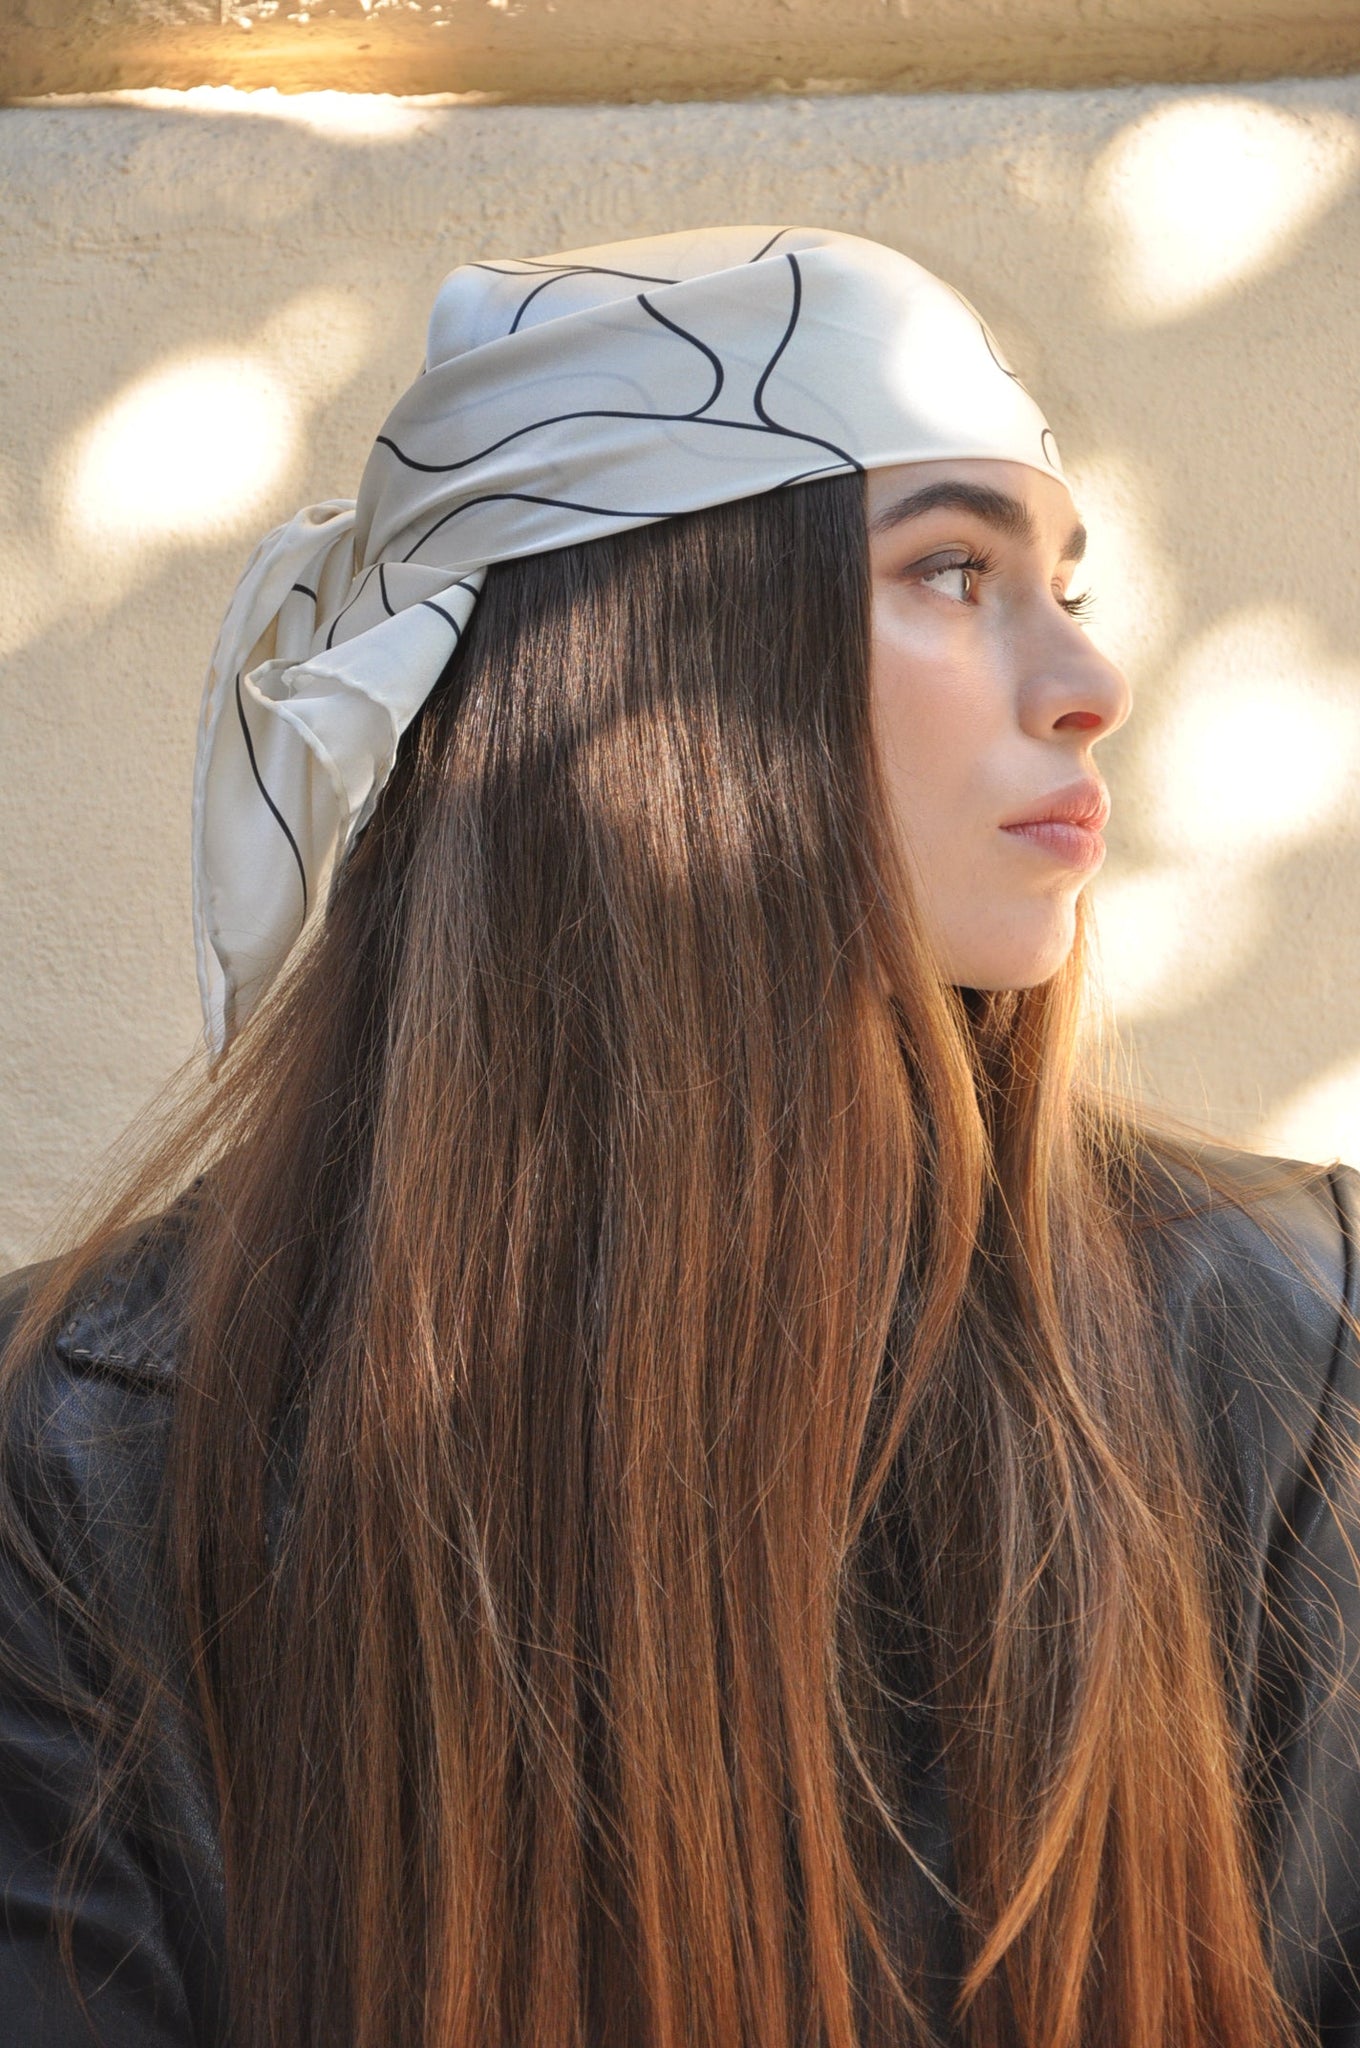 The Myth of Daphne - Nimfa design 100% silk scarf